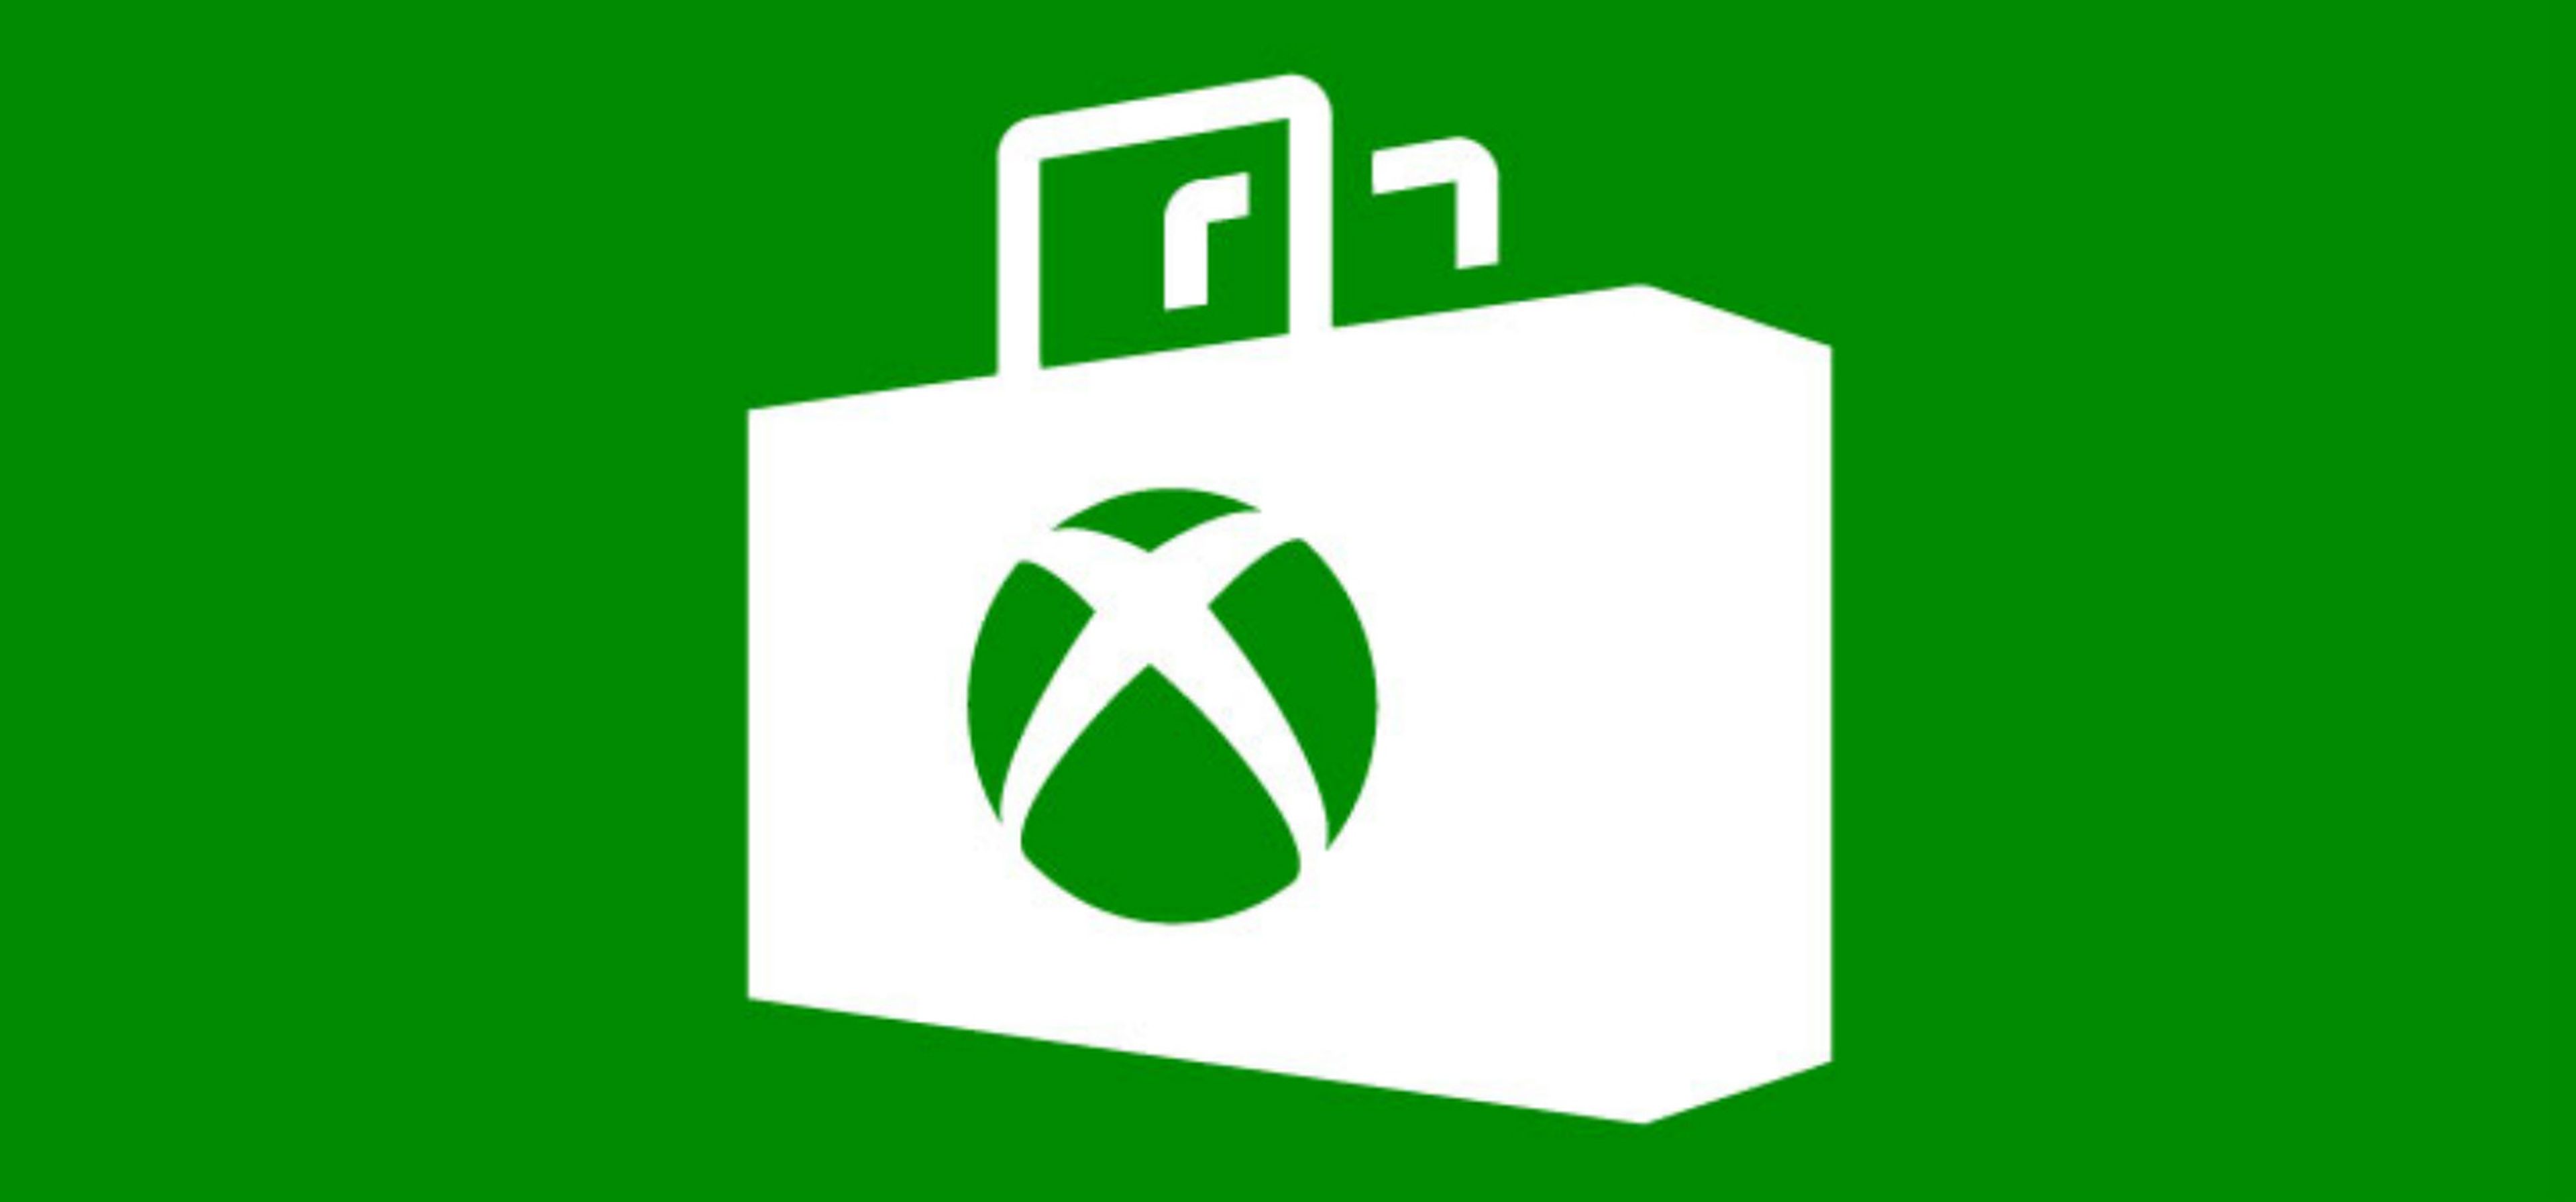 Xbox One S reescalará los juegos a 4k, según Mike Ybarra